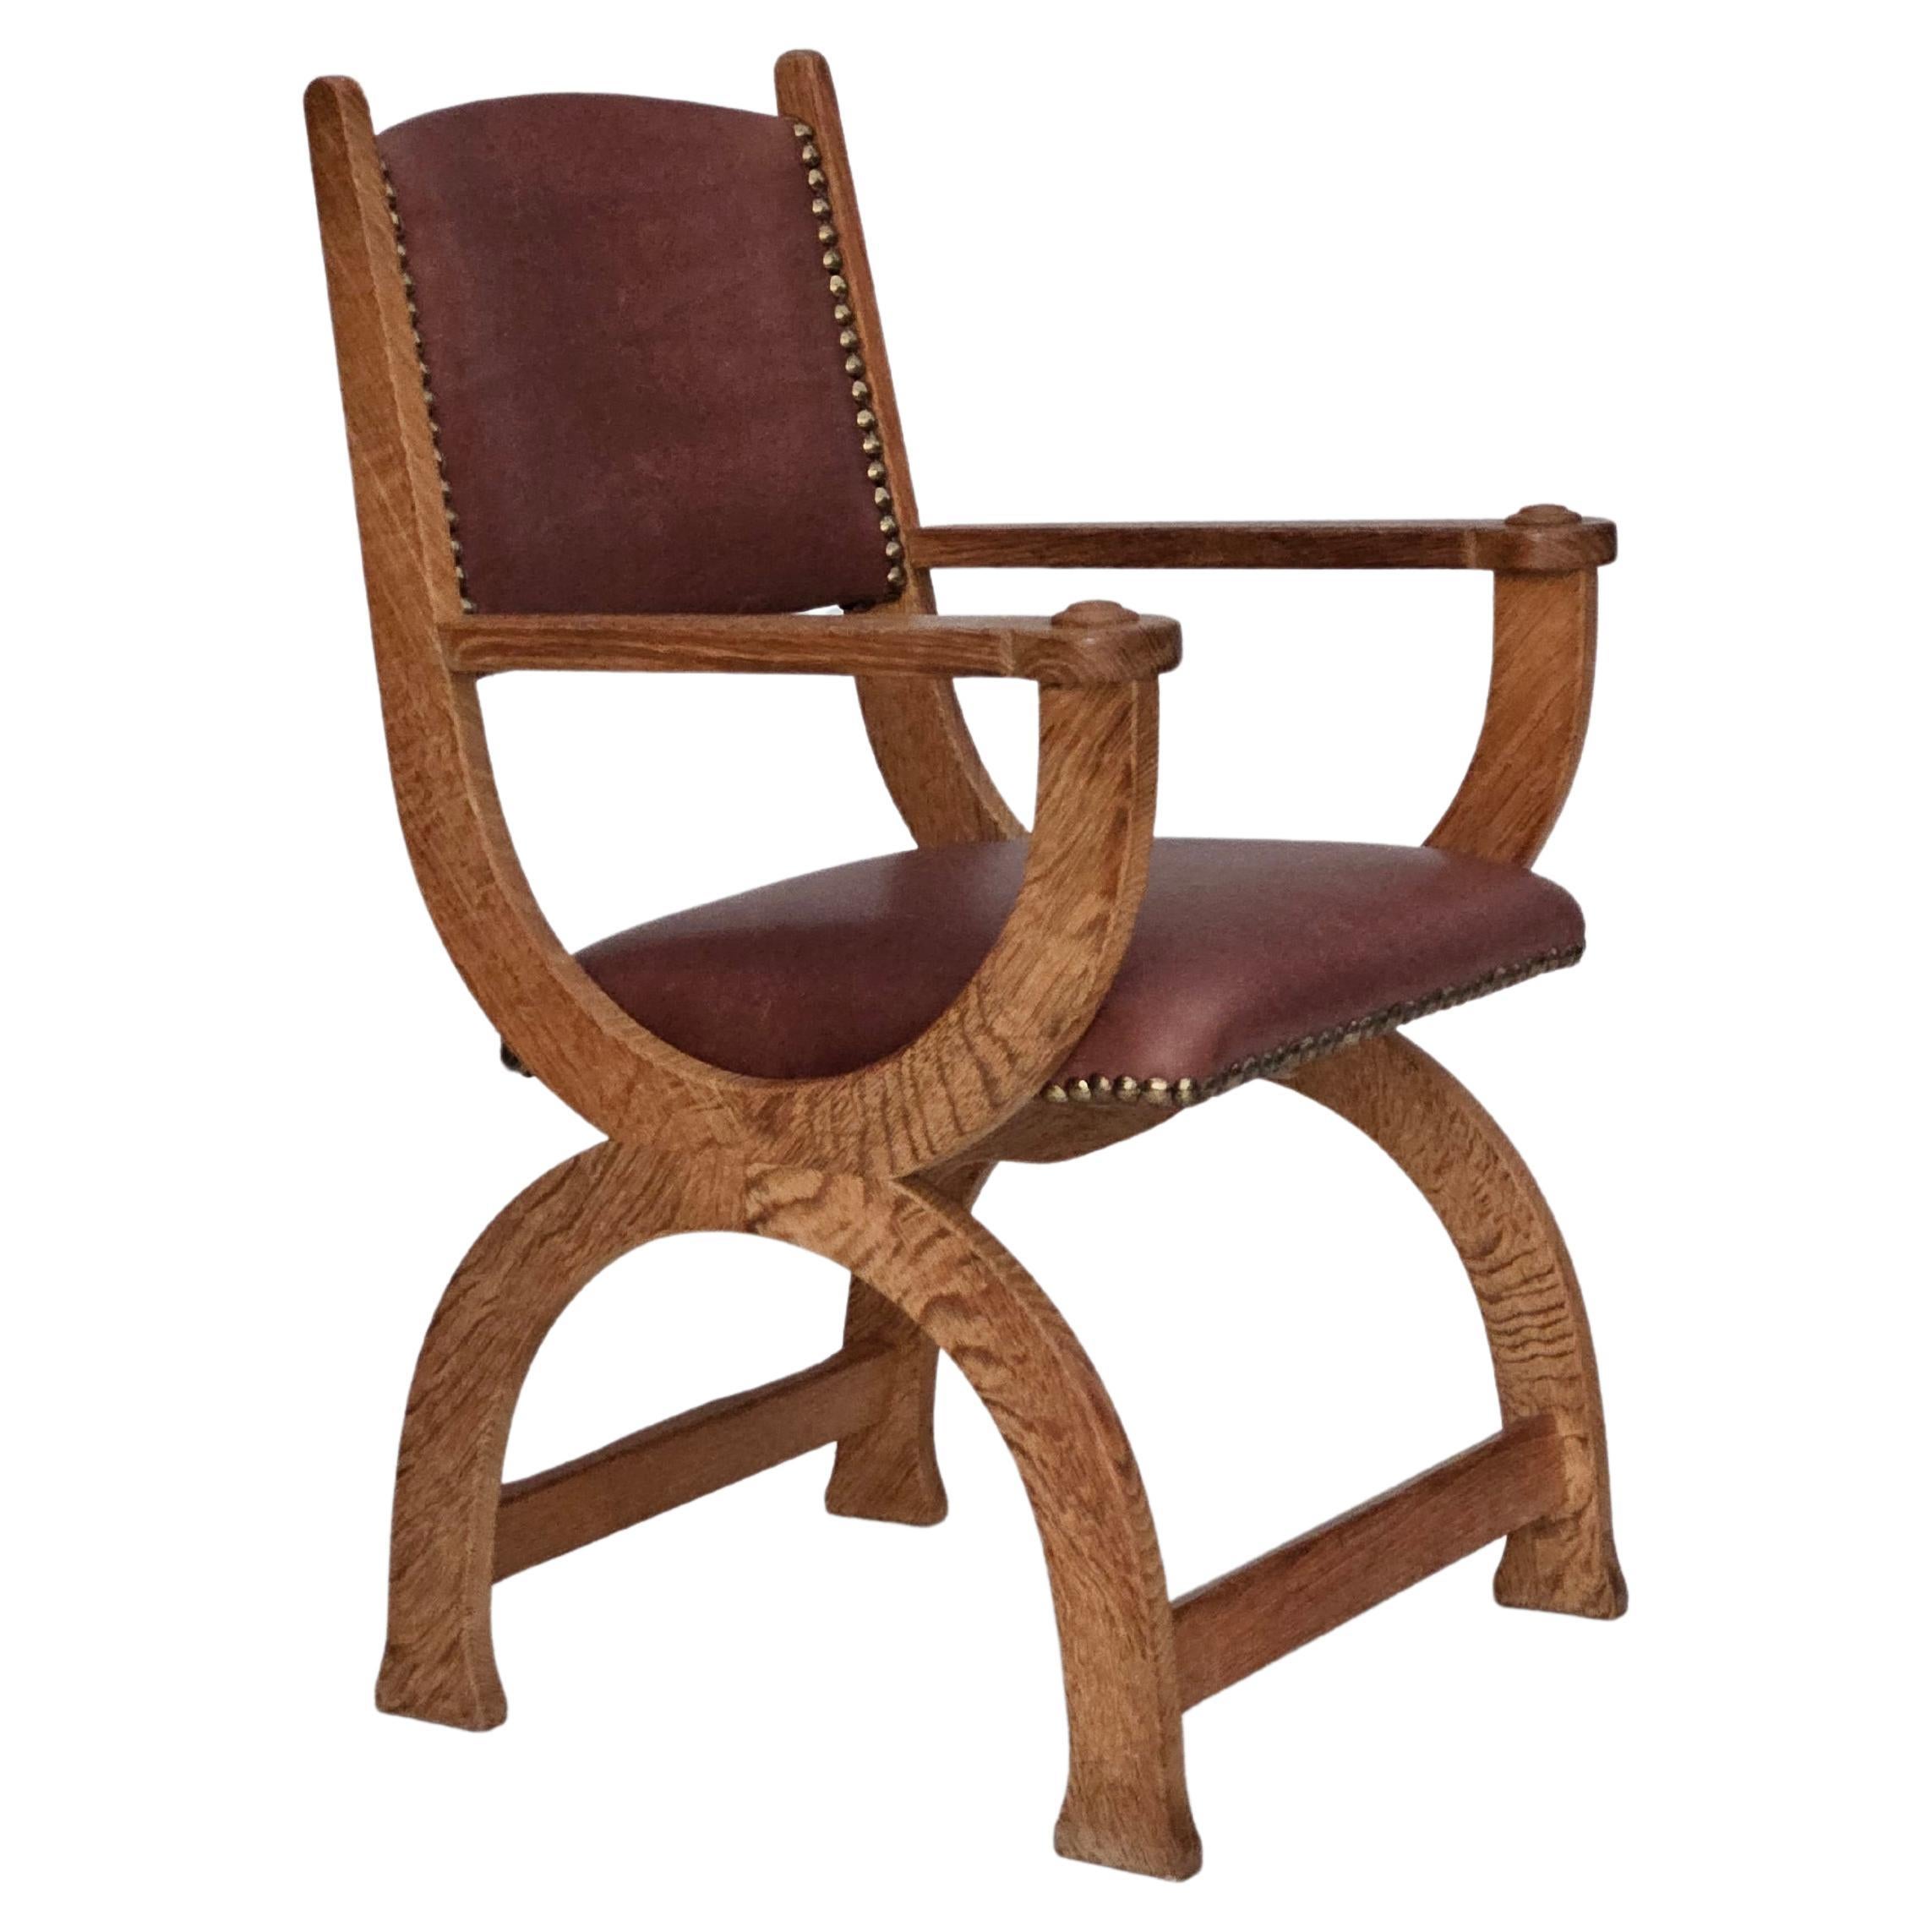 Années 50, Design/One, fauteuil retapissé, cuir brun naturel, bois de chêne.